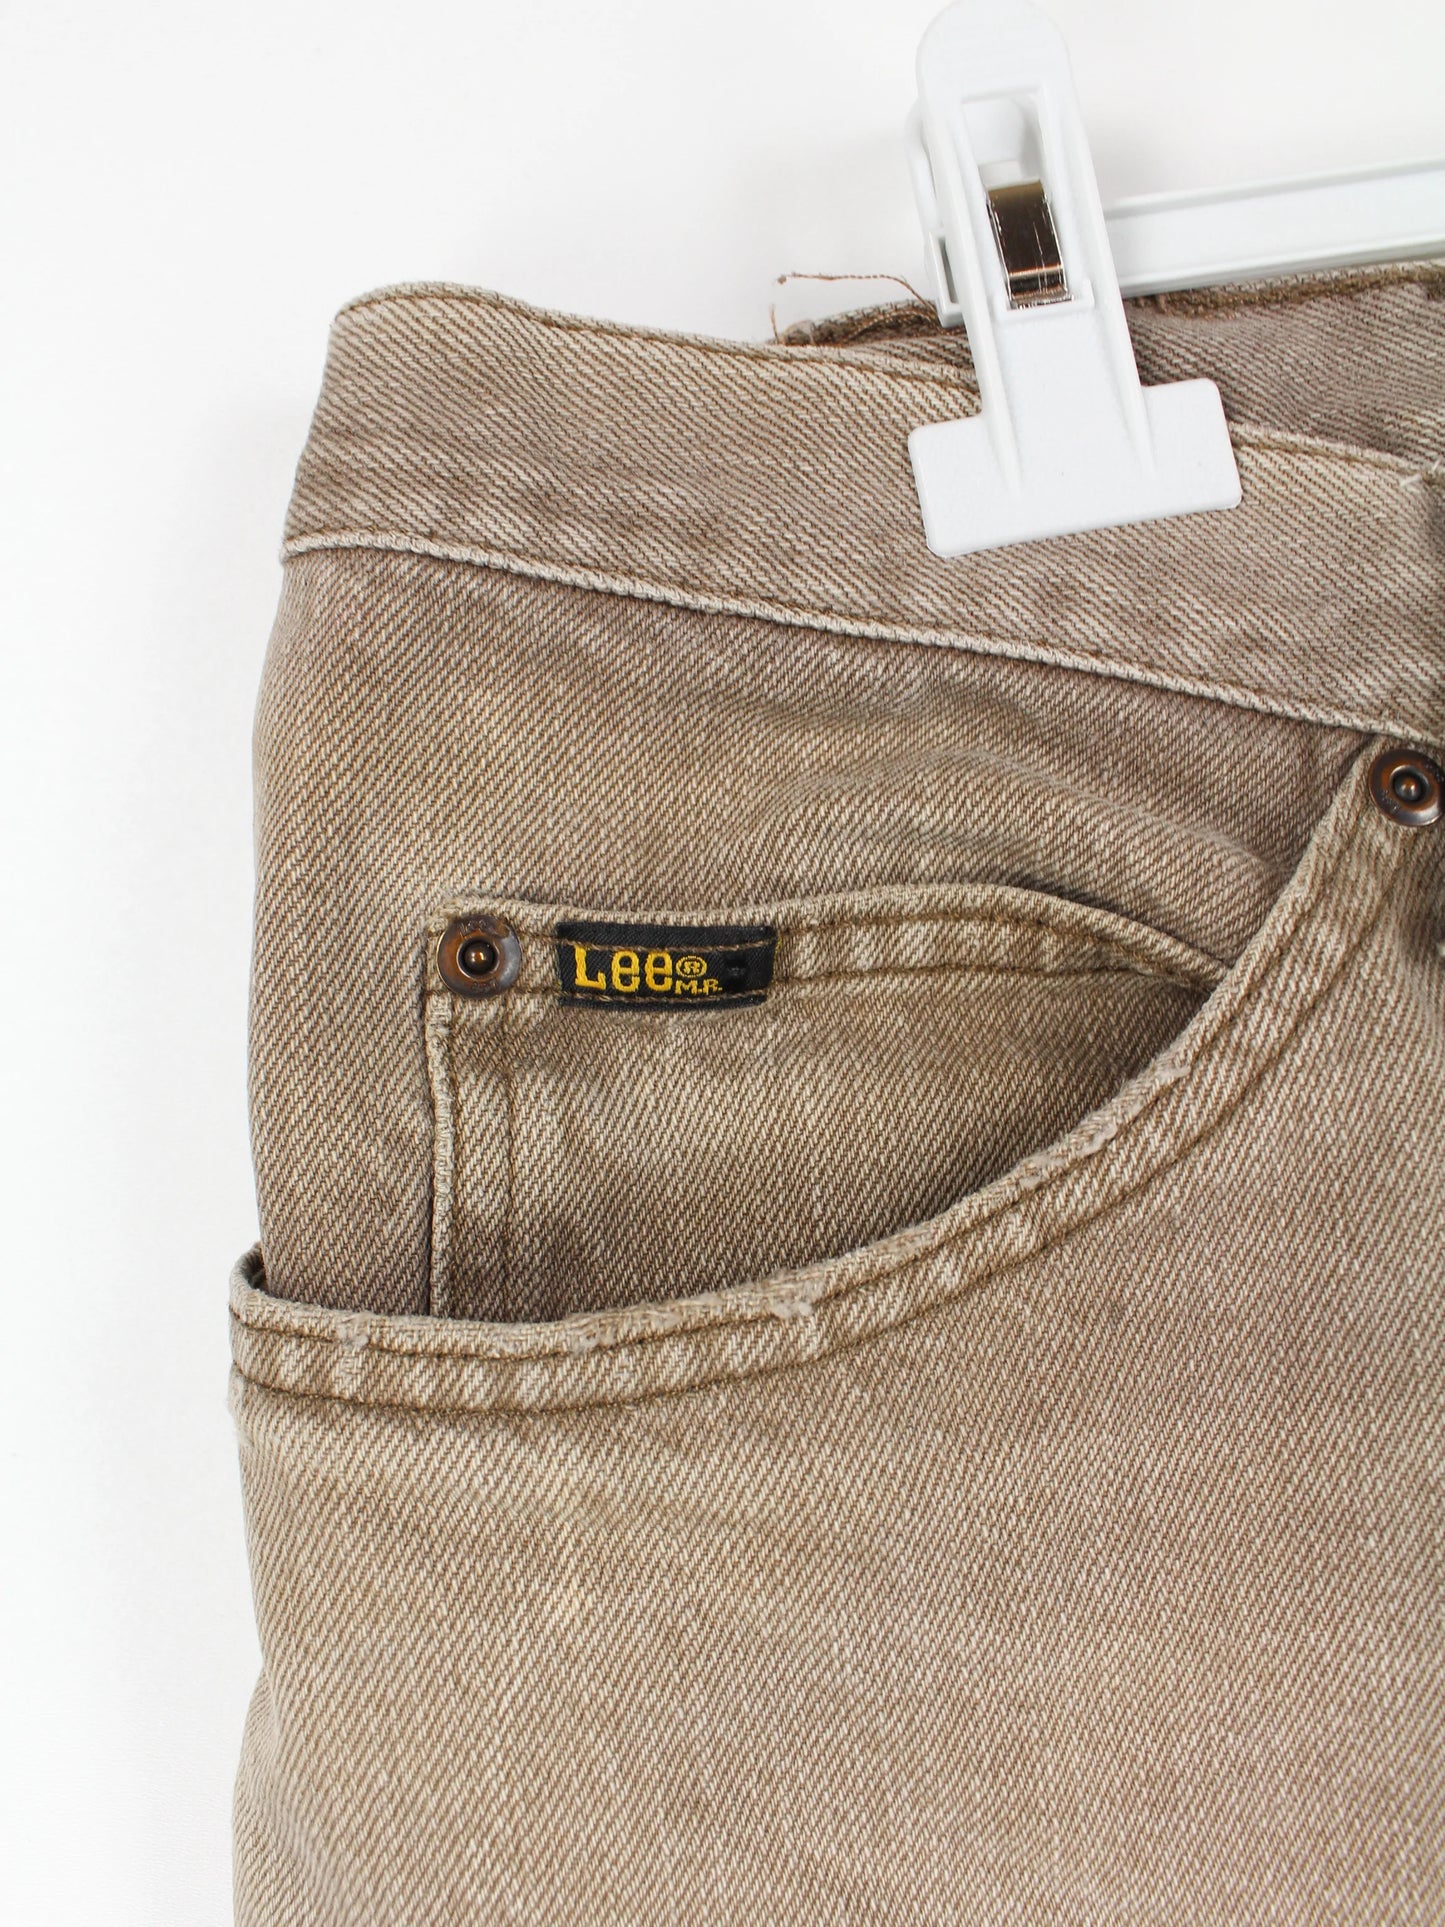 Lee Regular Fit Jeans Braun W42 L30